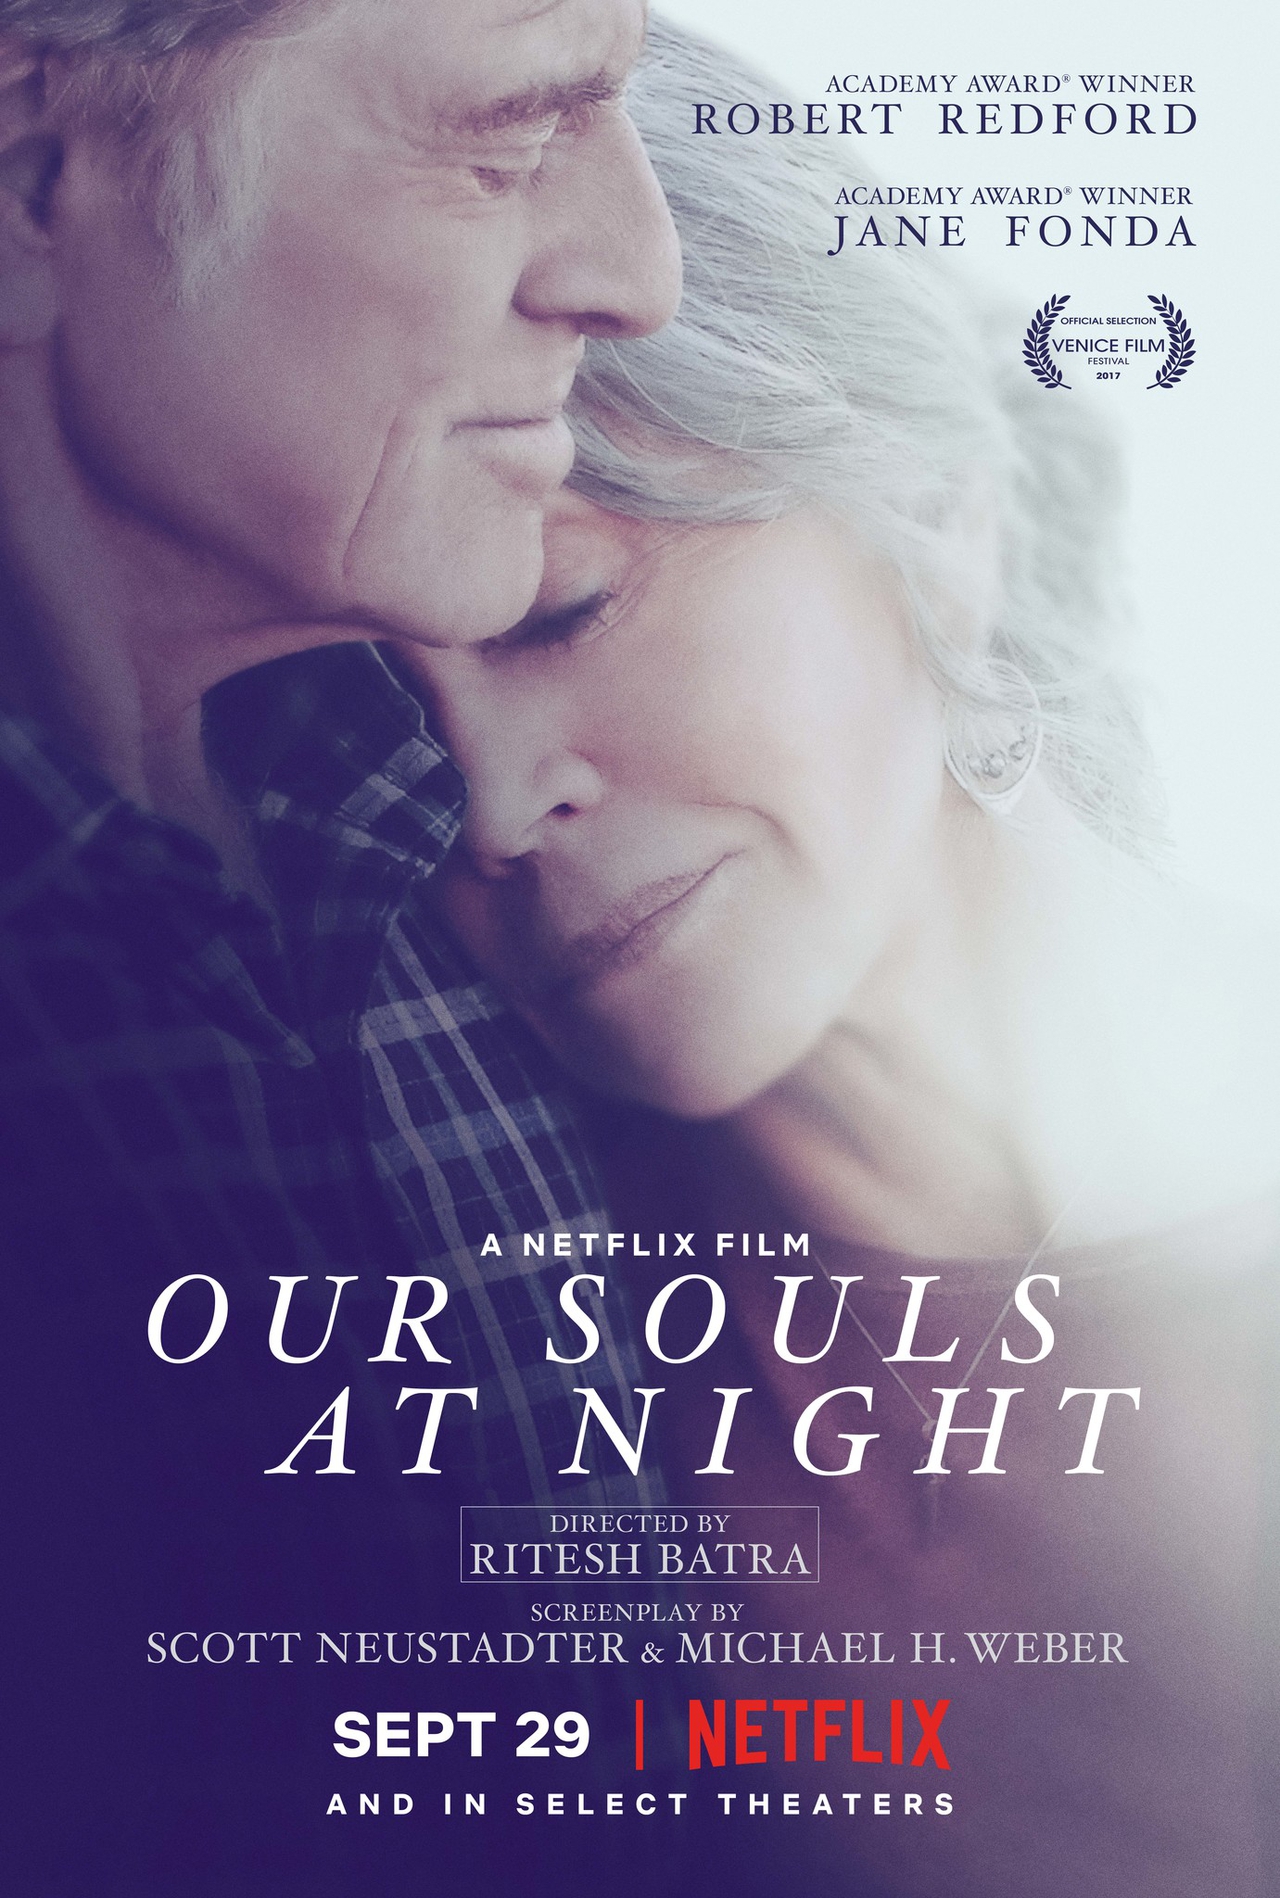 رابرت ردفورد در صحنه فیلم سینمایی Our Souls at Night به همراه Jane Fonda